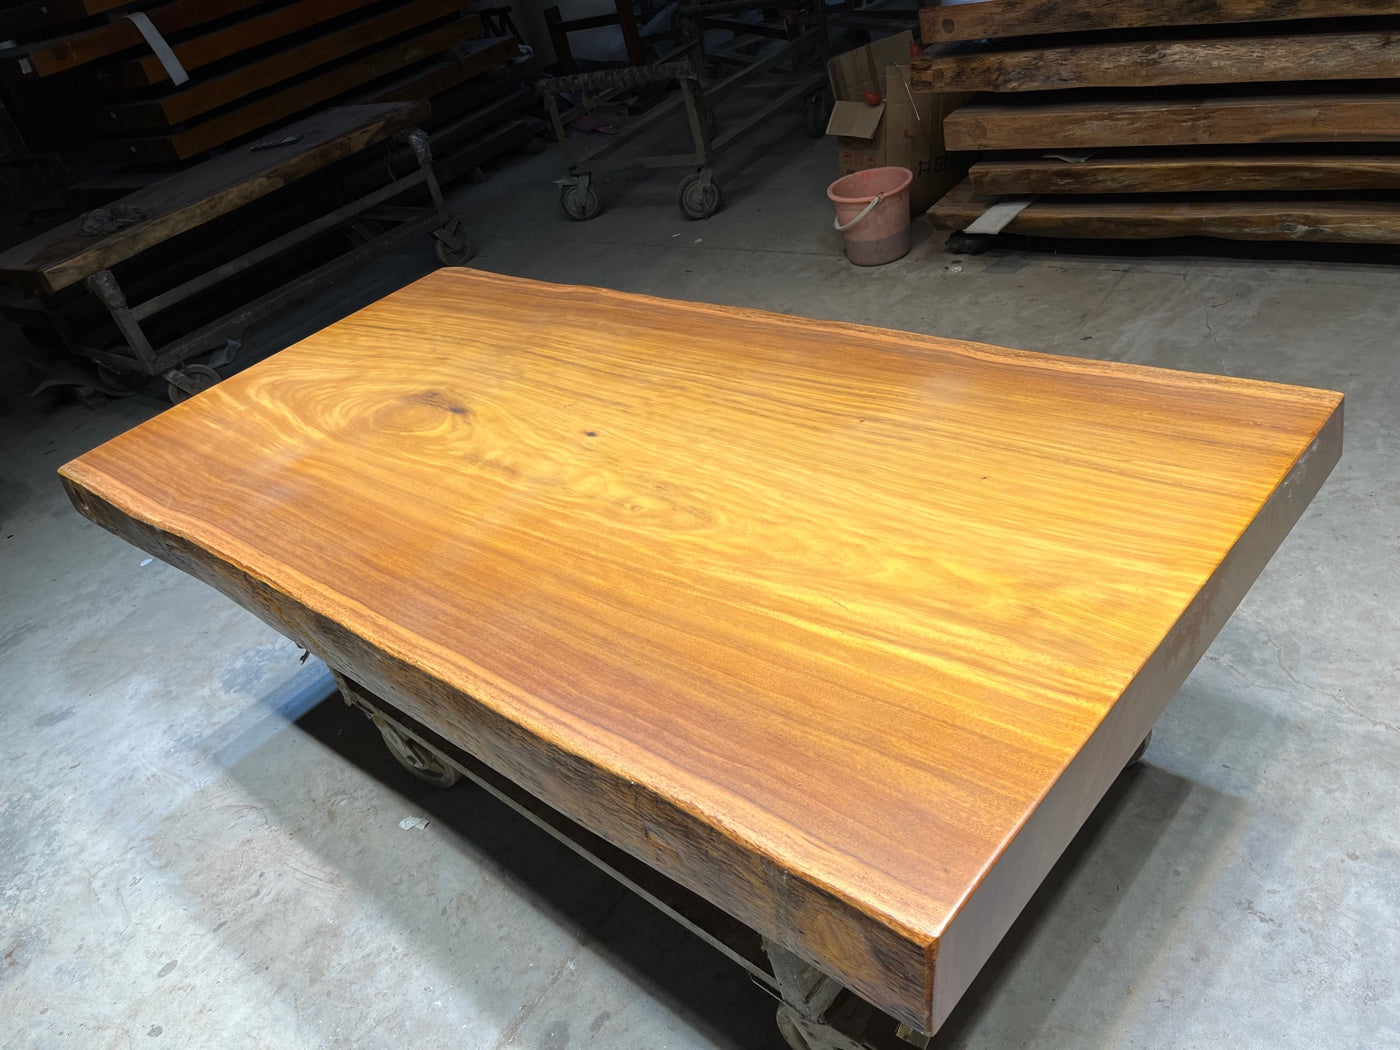 أرجل طاولة لوح خشب تالي، سطح طاولة خشب تالي، تصميمات طاولة لوح خشب أفريقي